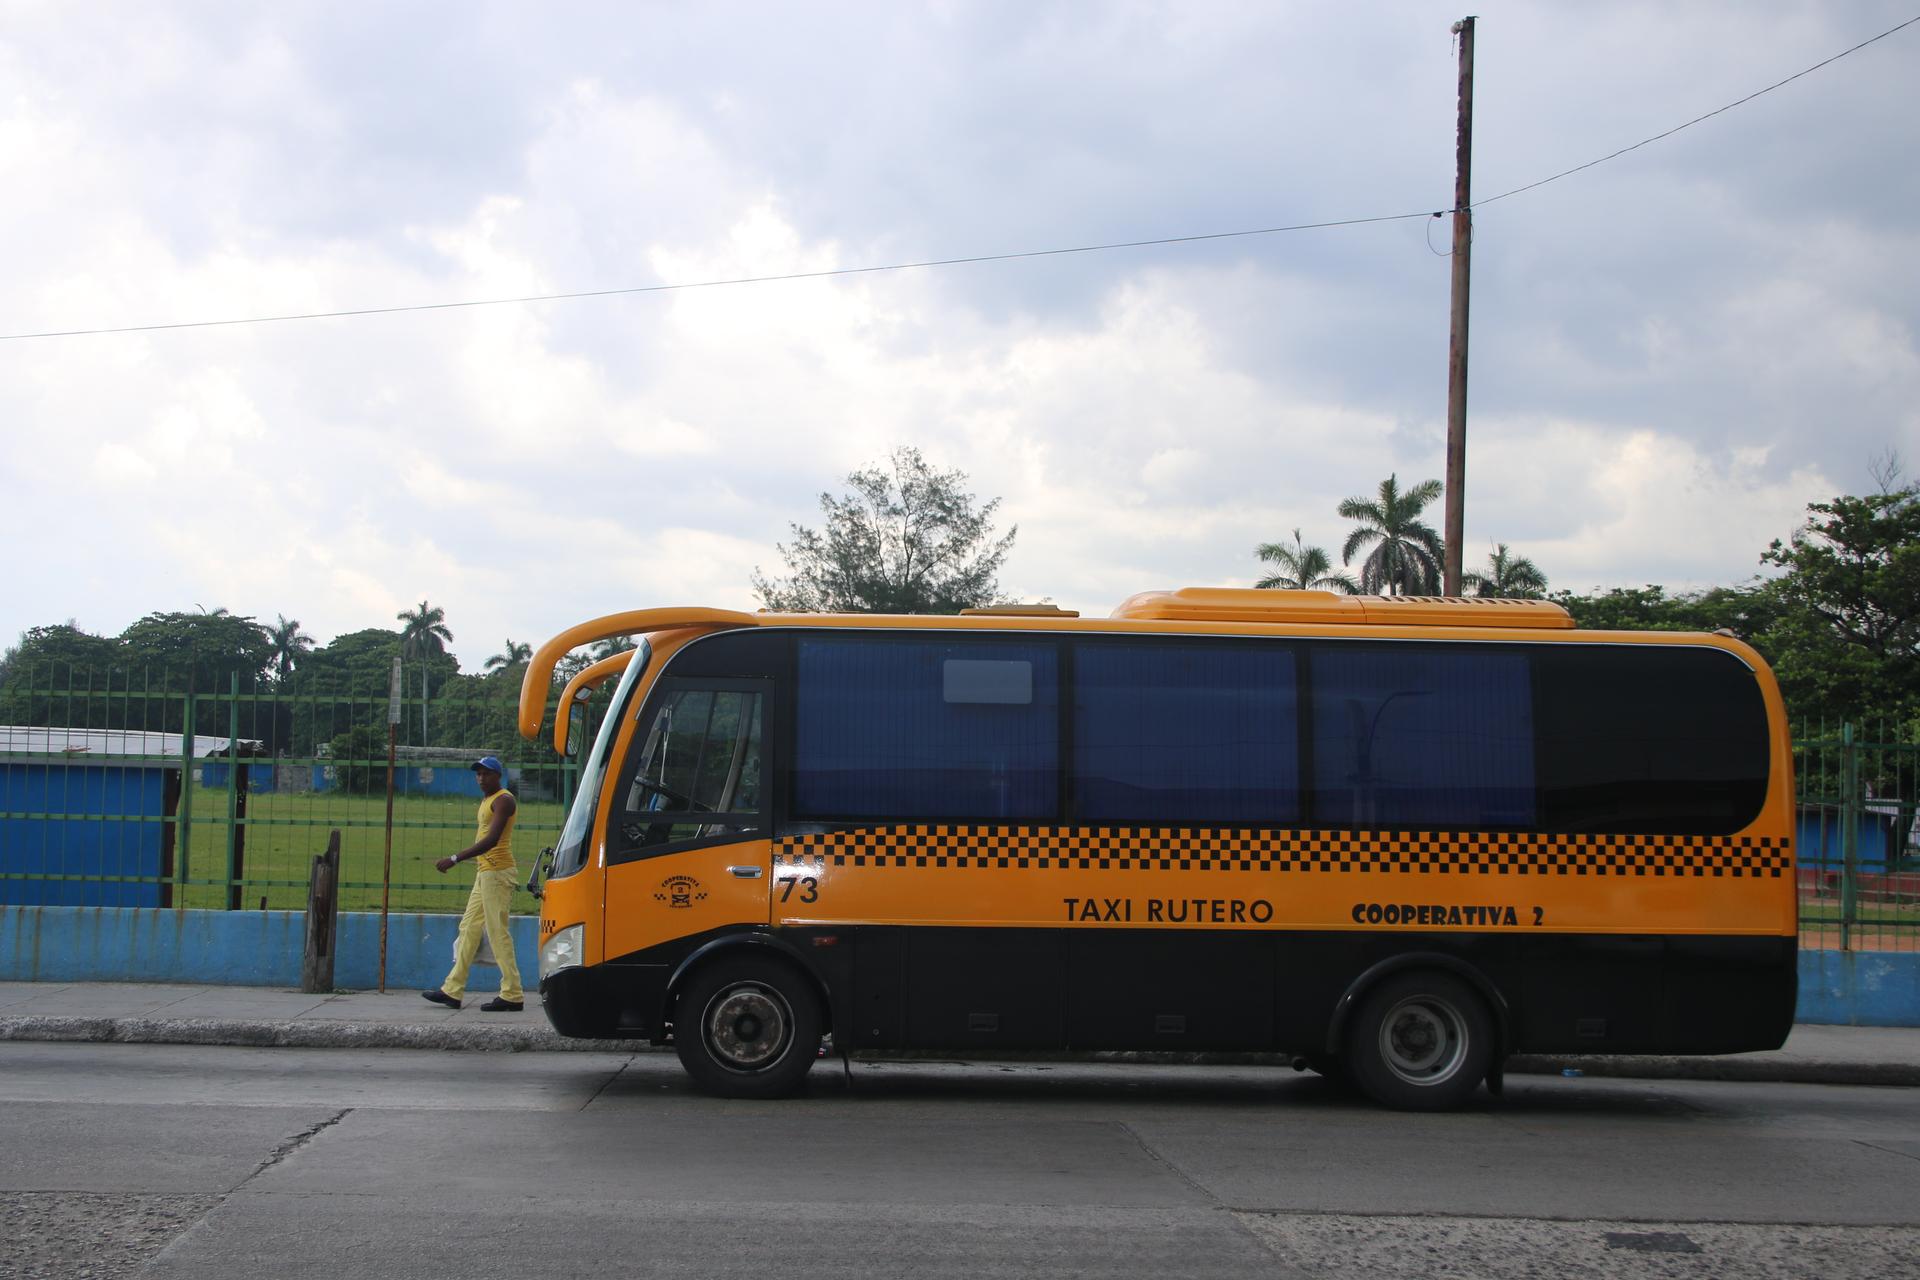 Taxi Rutero bus